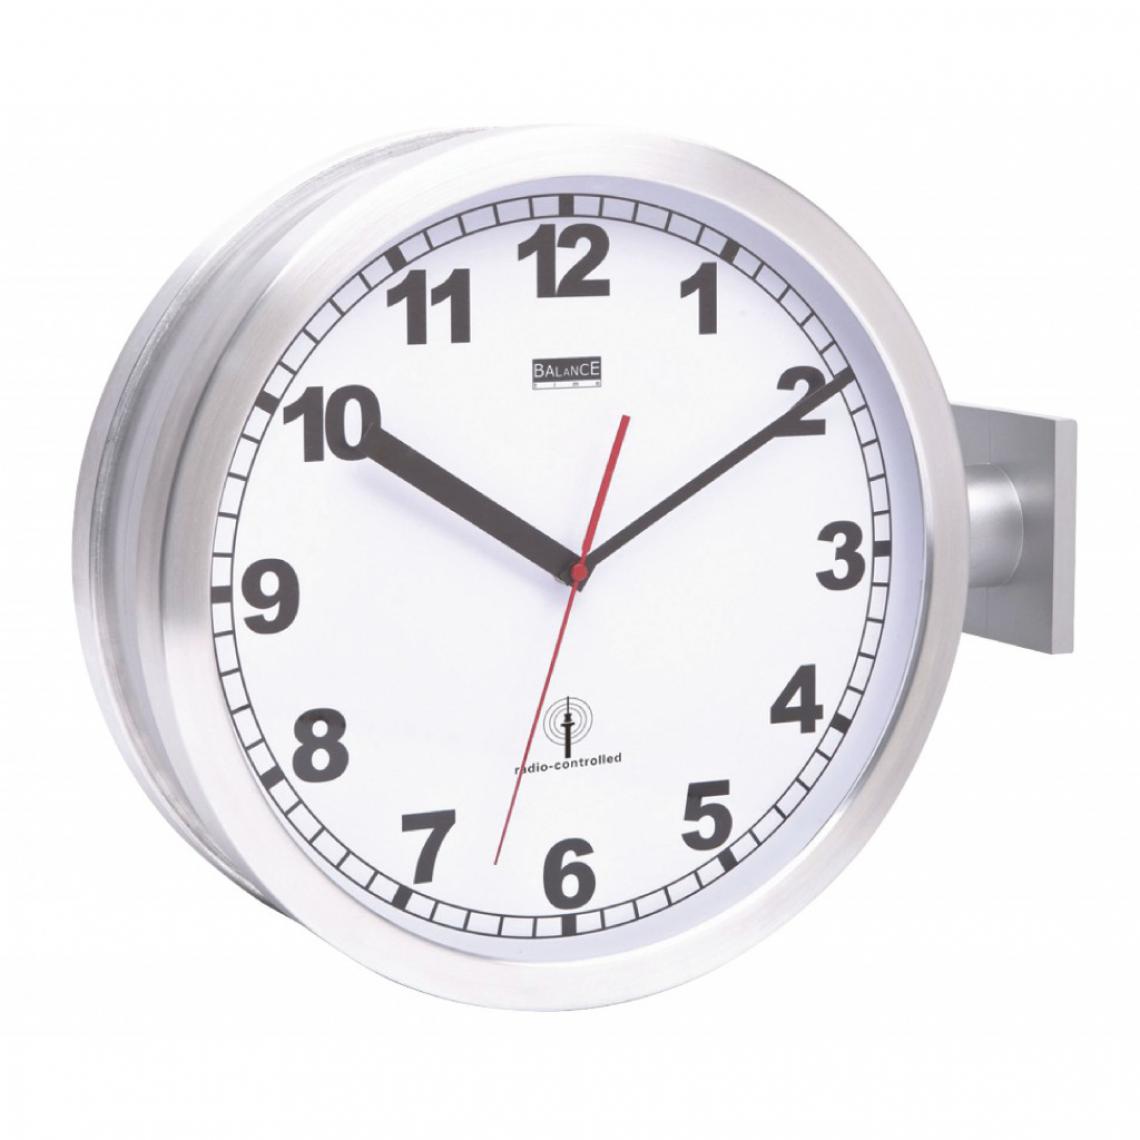 Alpexe - Horloge murale Radio-contrôlée 38 cm Analogiques Argent/Blanc - Horloges, pendules